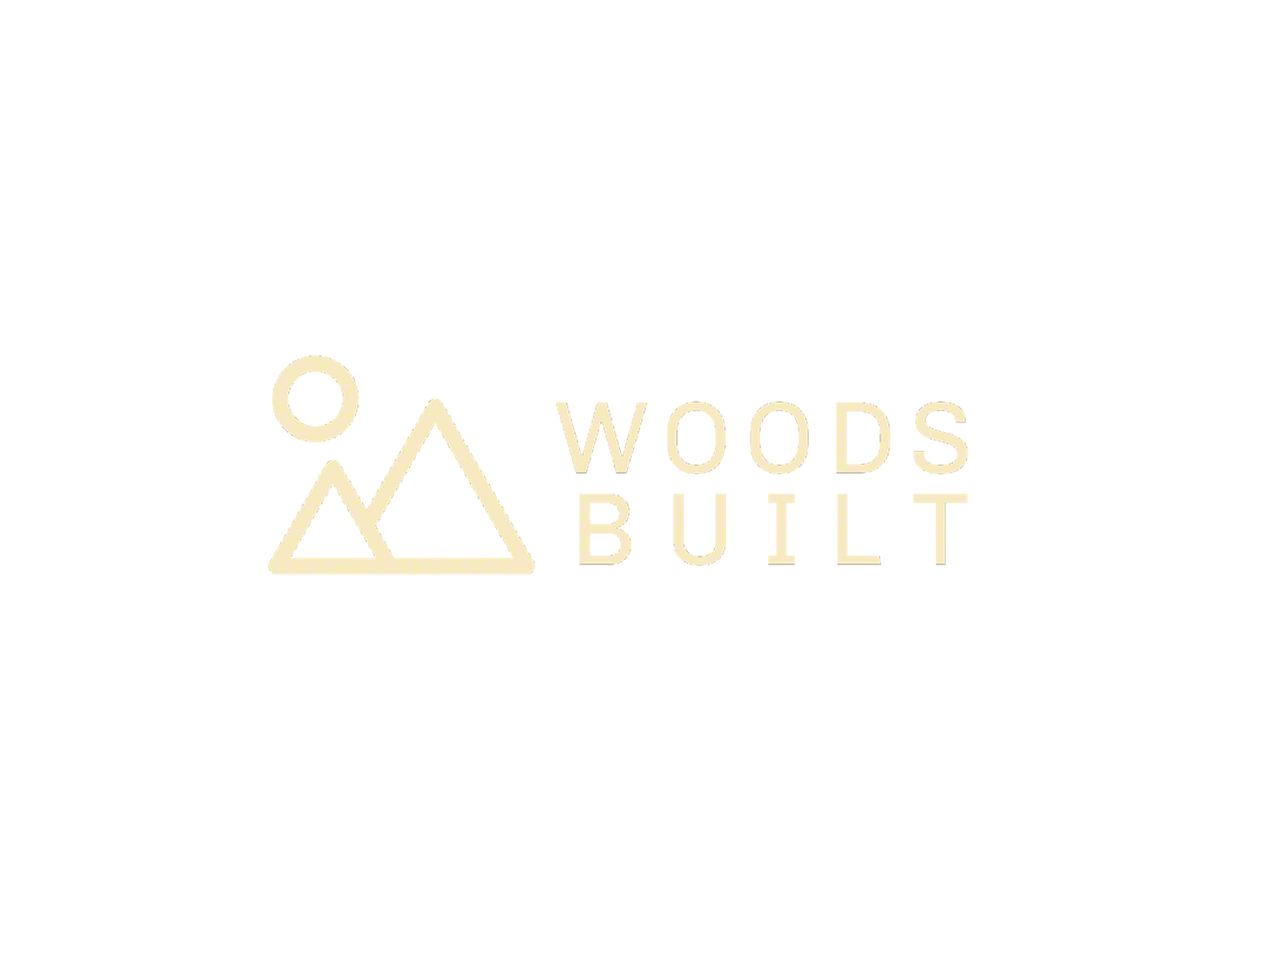 WoodsBuilt Parts